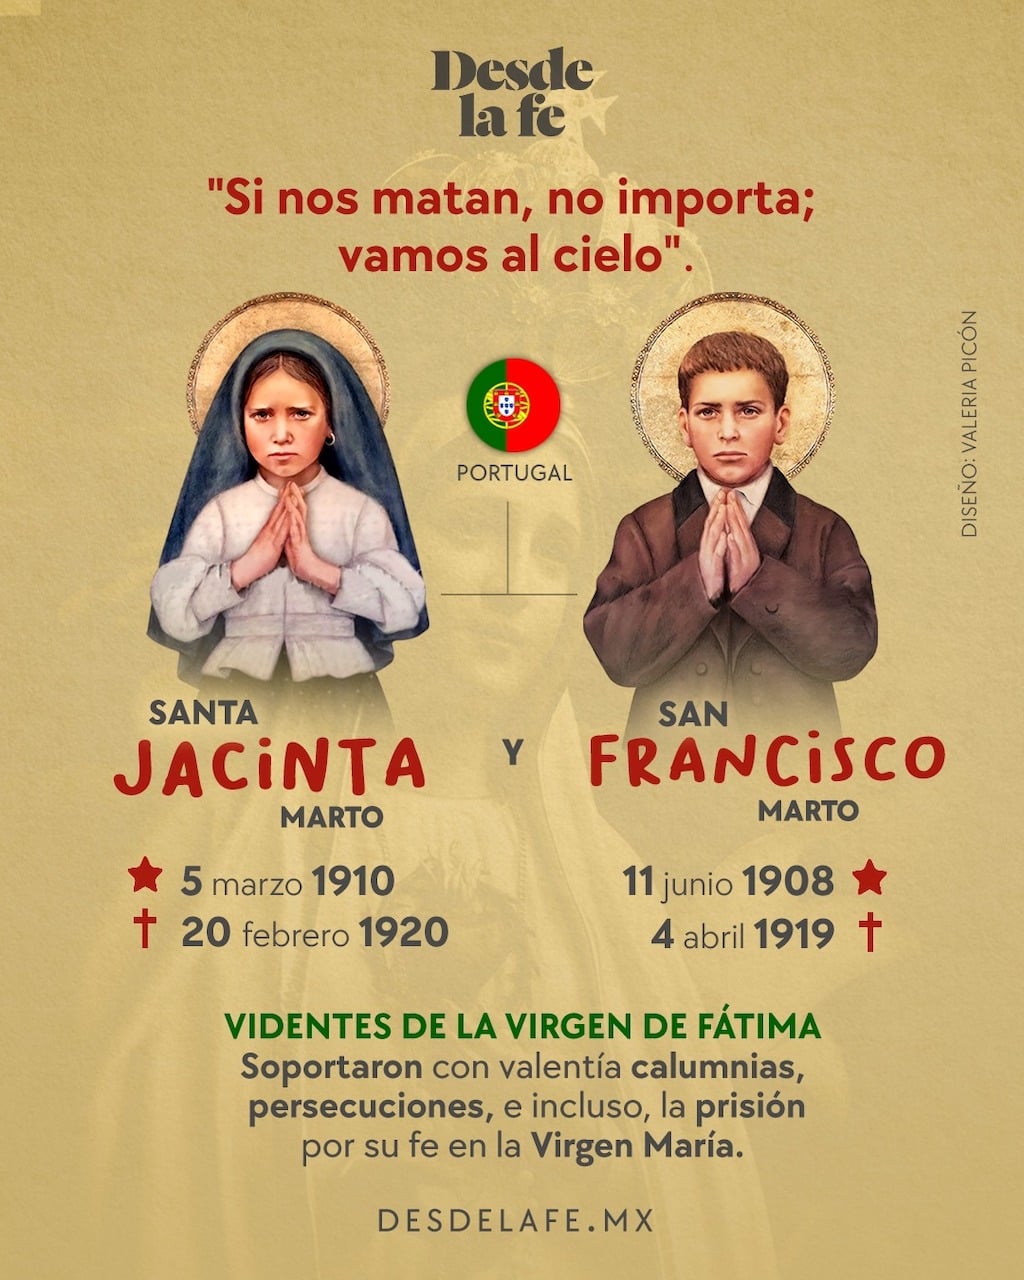 Jacinto y Francisco Marto, videntes de la Virgen de Fátima / Ilustración: Desde la fe